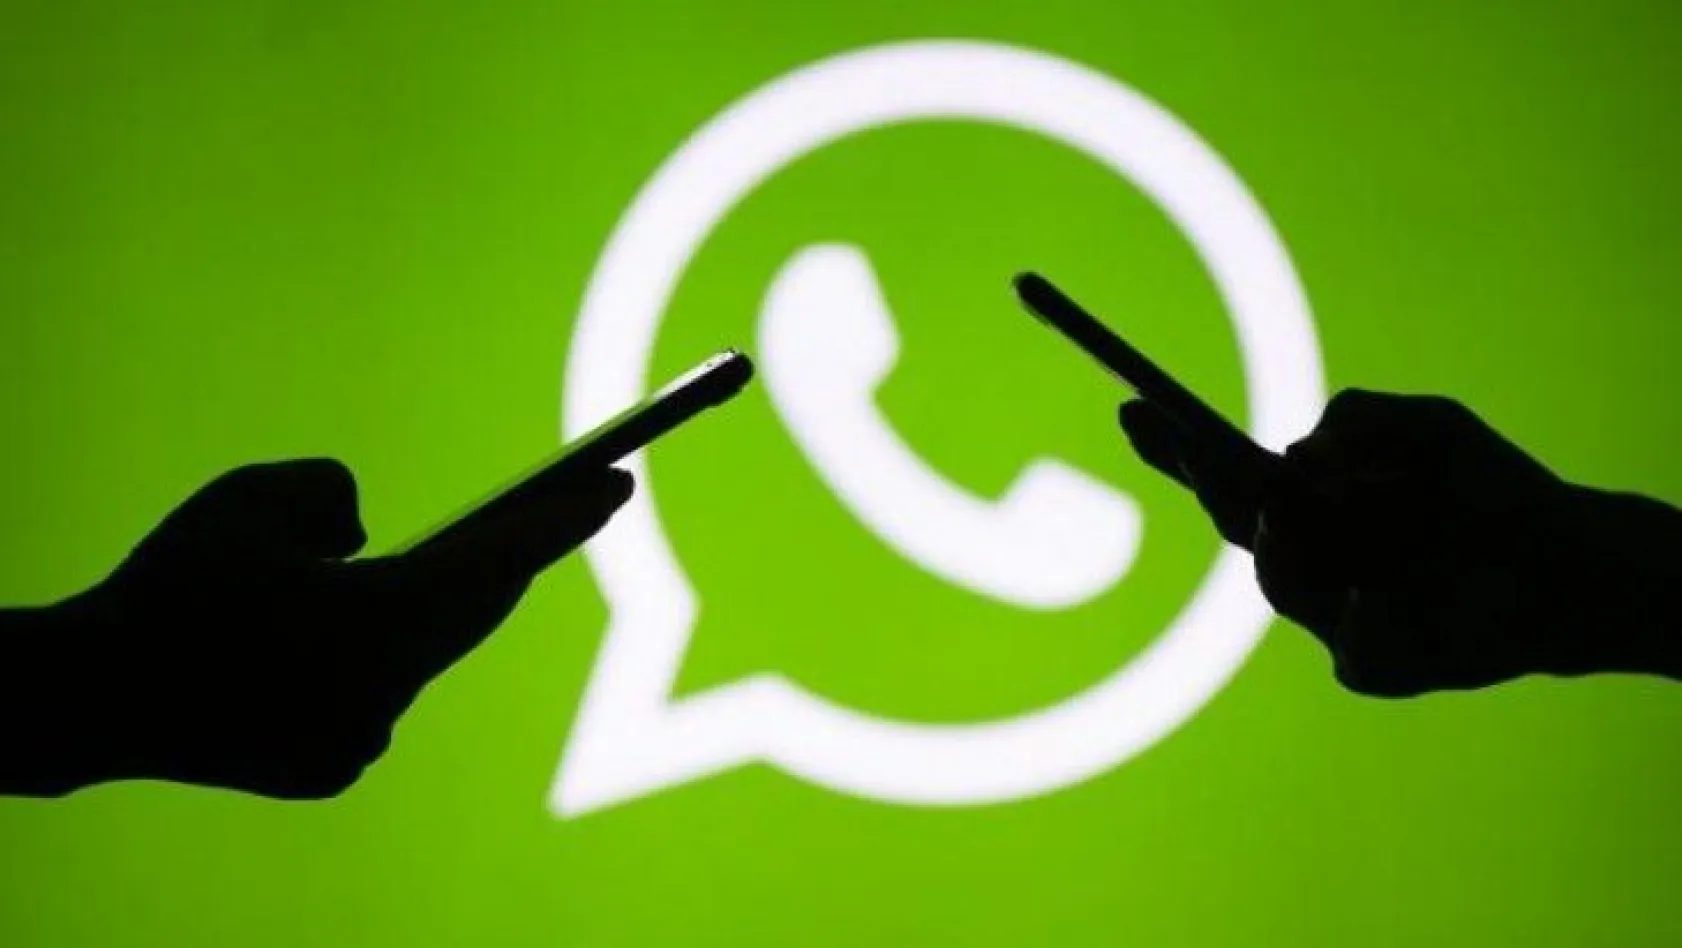 Alman istihbaratı WhatsApp yazışmalarını okuyabilecek